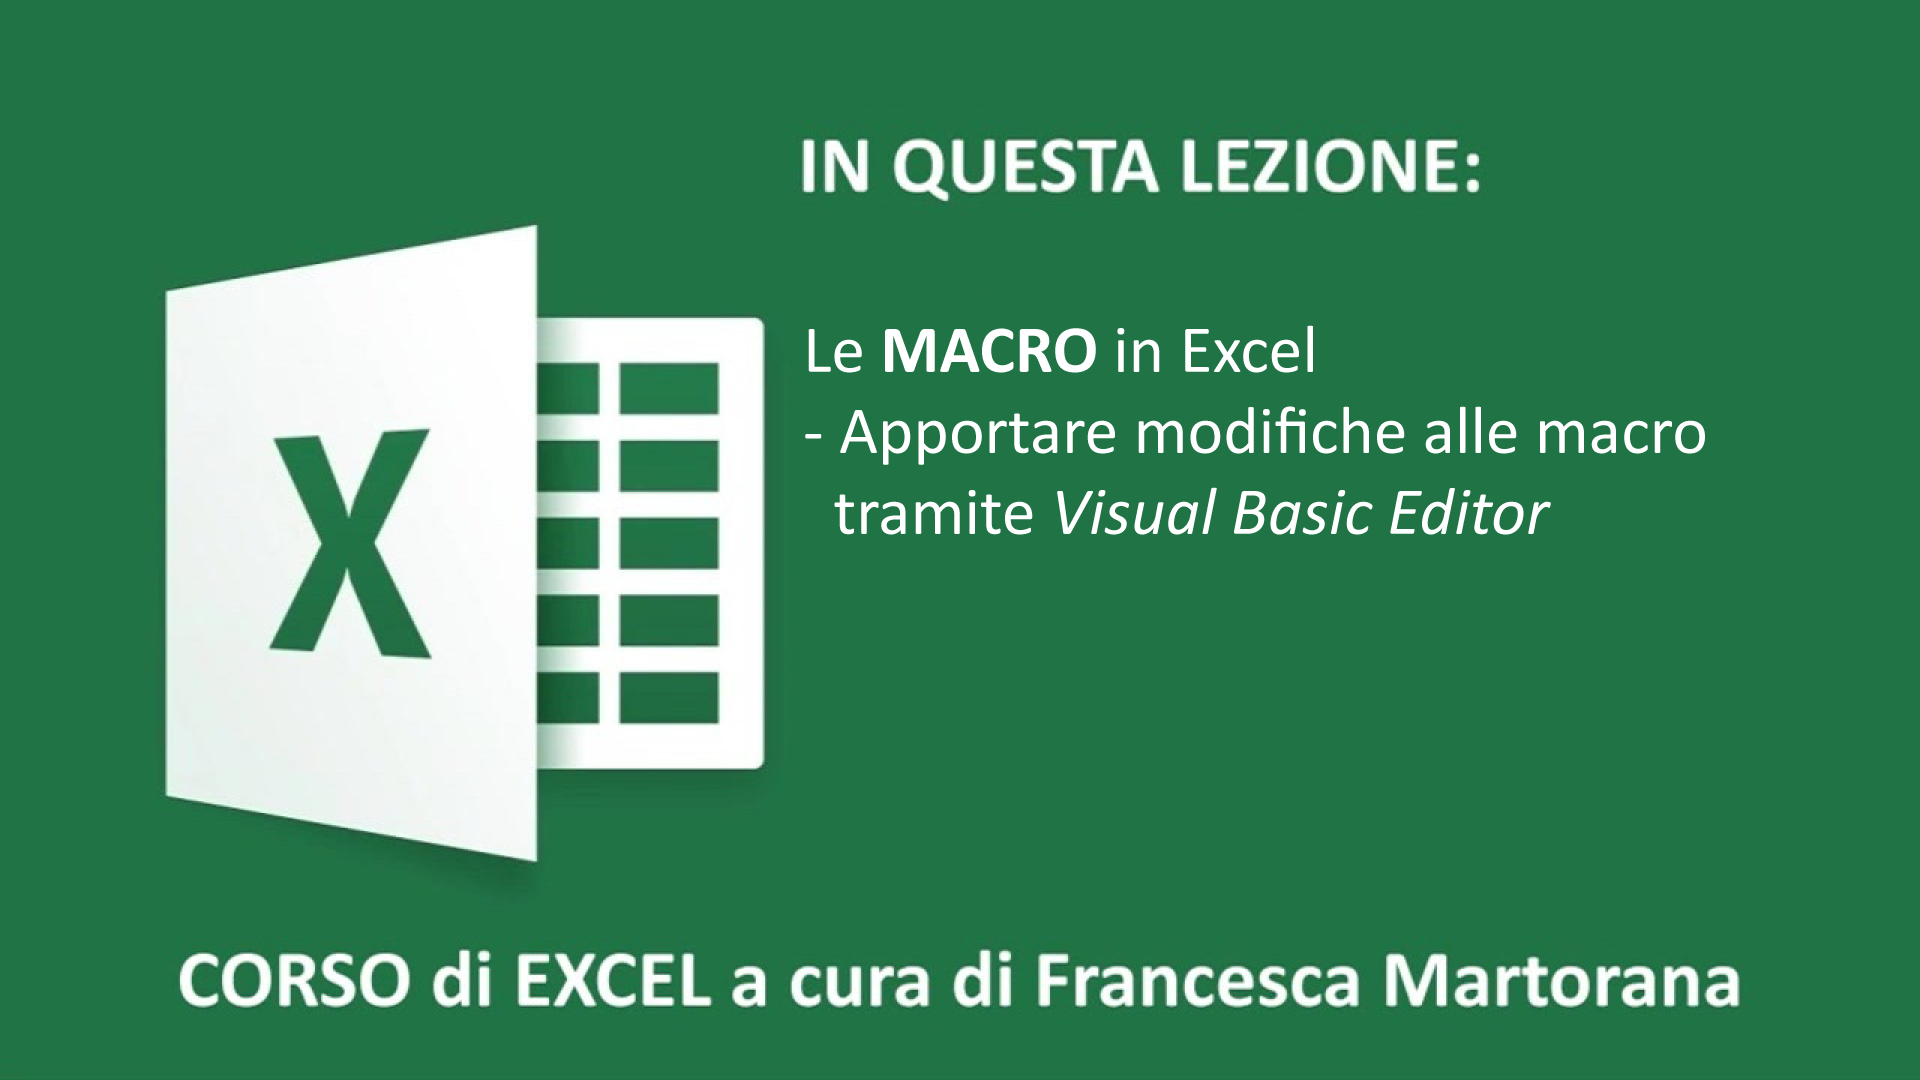 Excel Macro